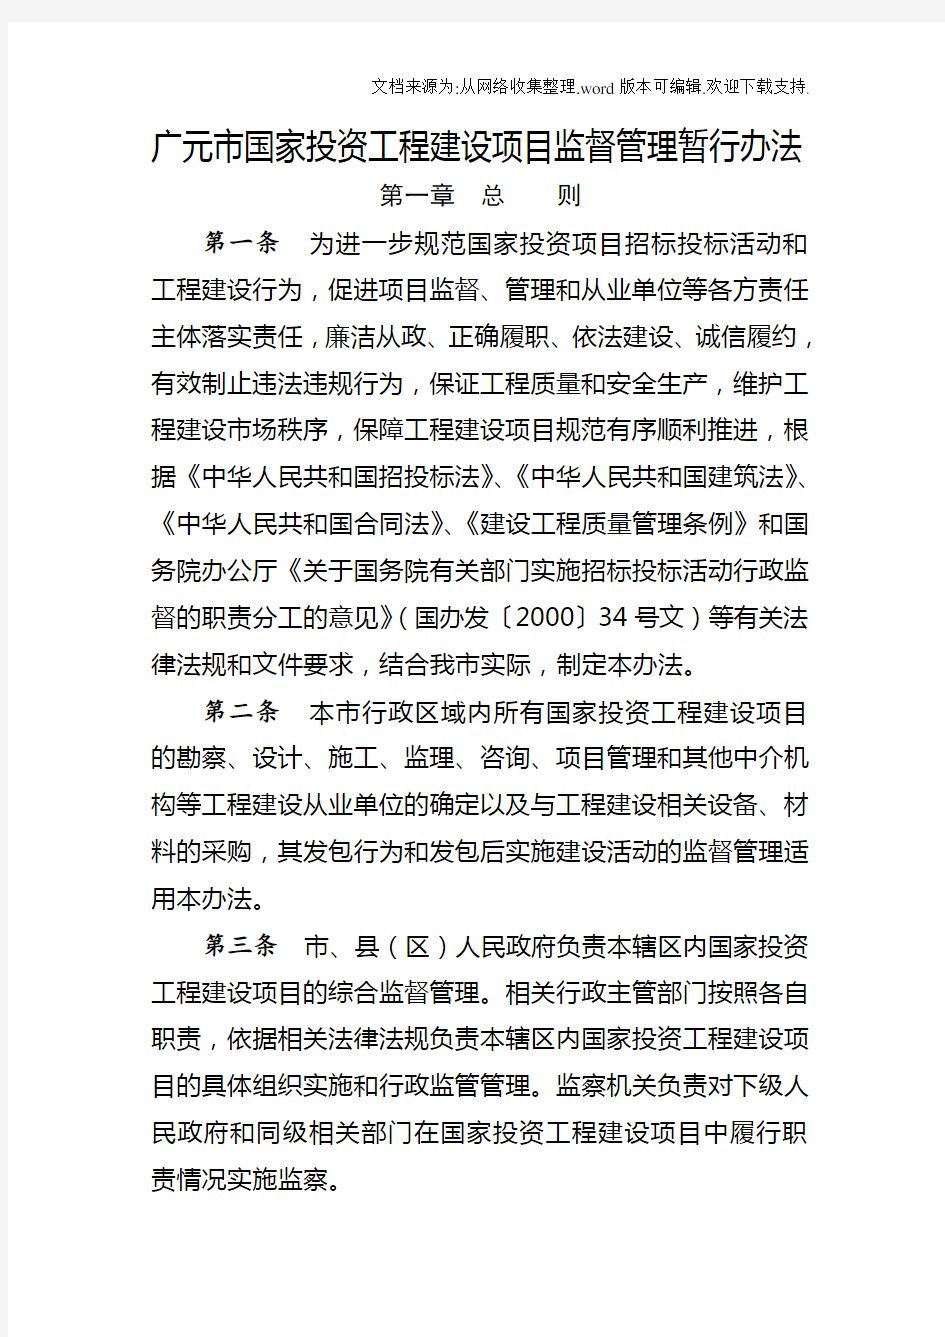 广元市国家投资工程建设项目监督管理暂行办法